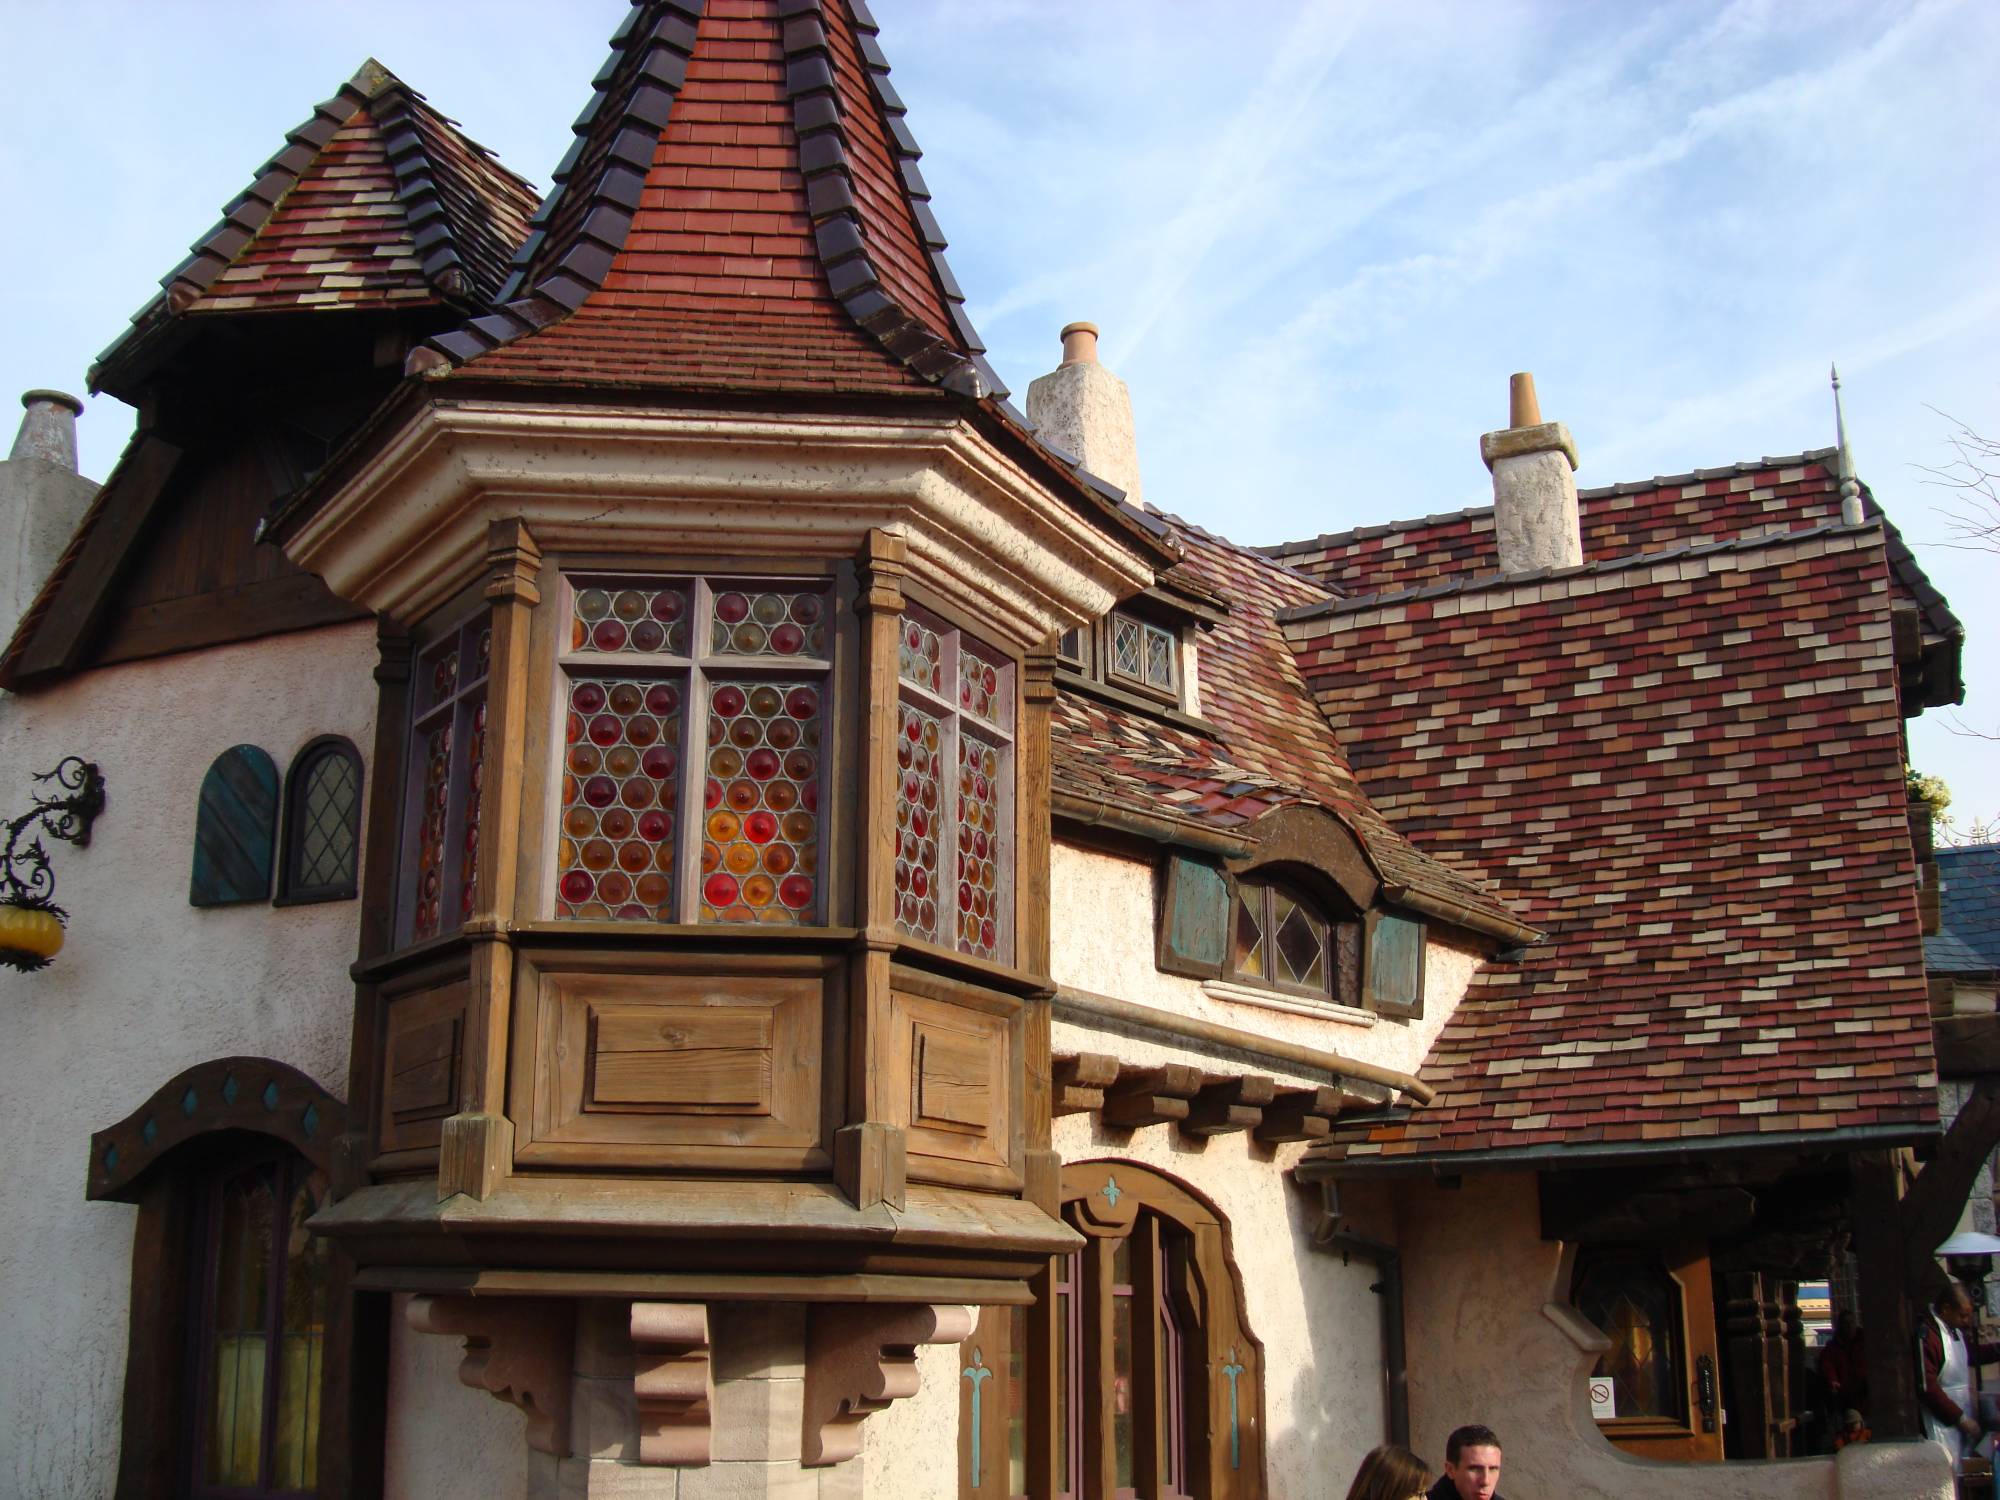 Disneyland Paris - Fantasyland